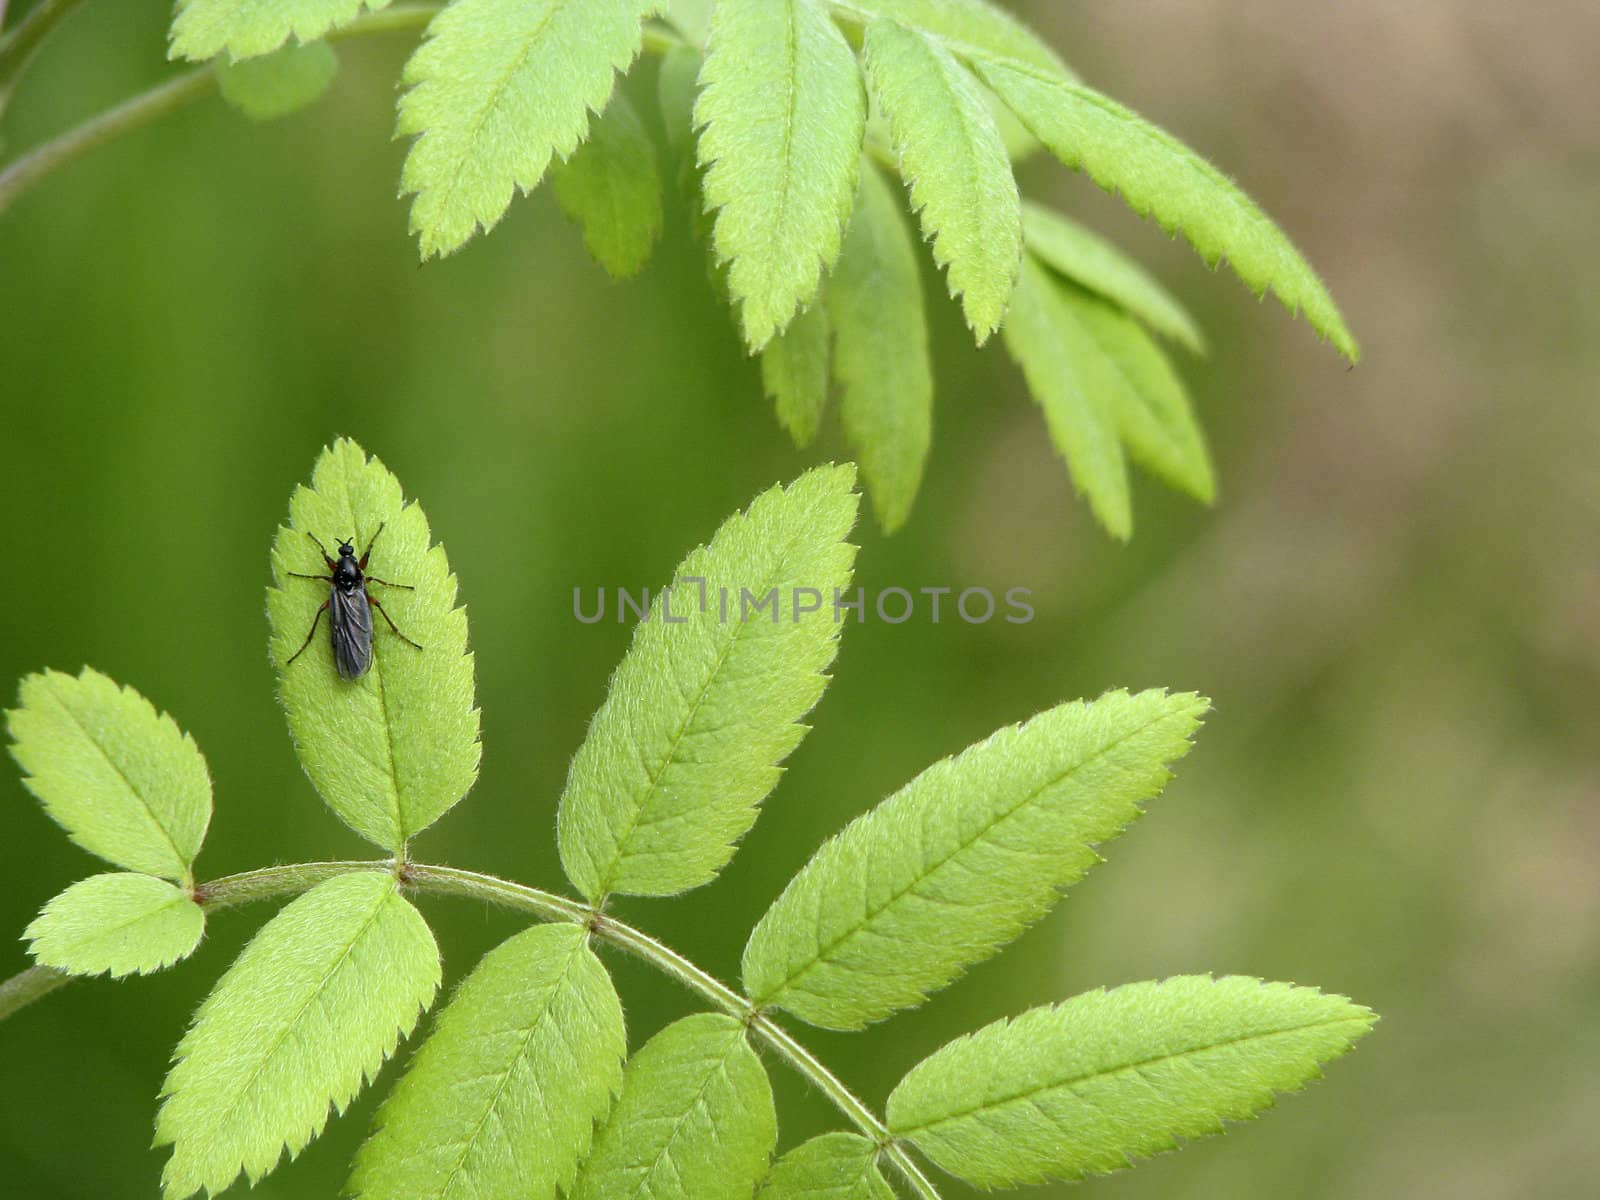 Beetle on a leaf focused